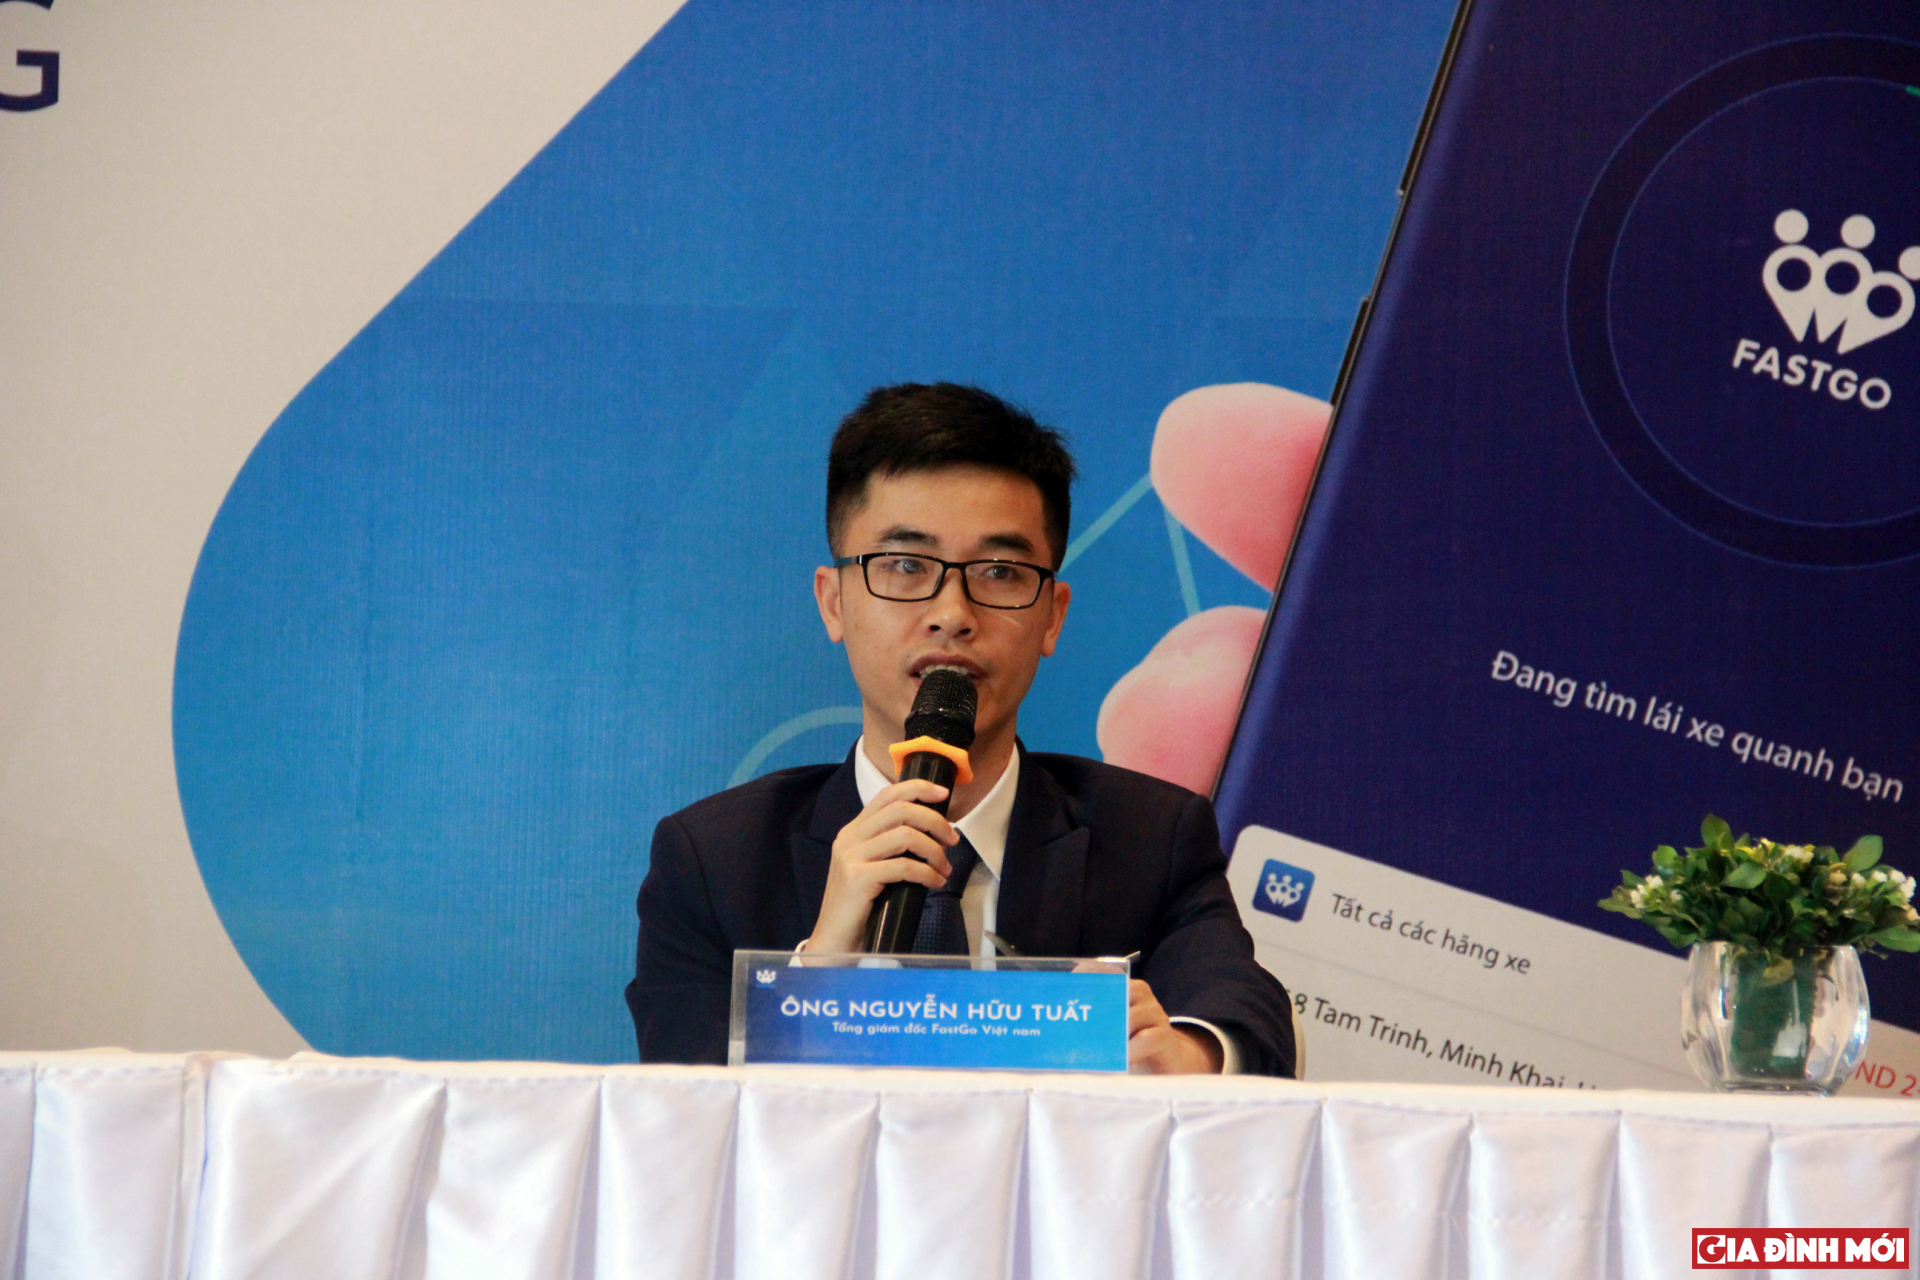 Ông Nguyễn Hữu Tuất, Tổng giám đốc Công ty FastGo Việt Nam